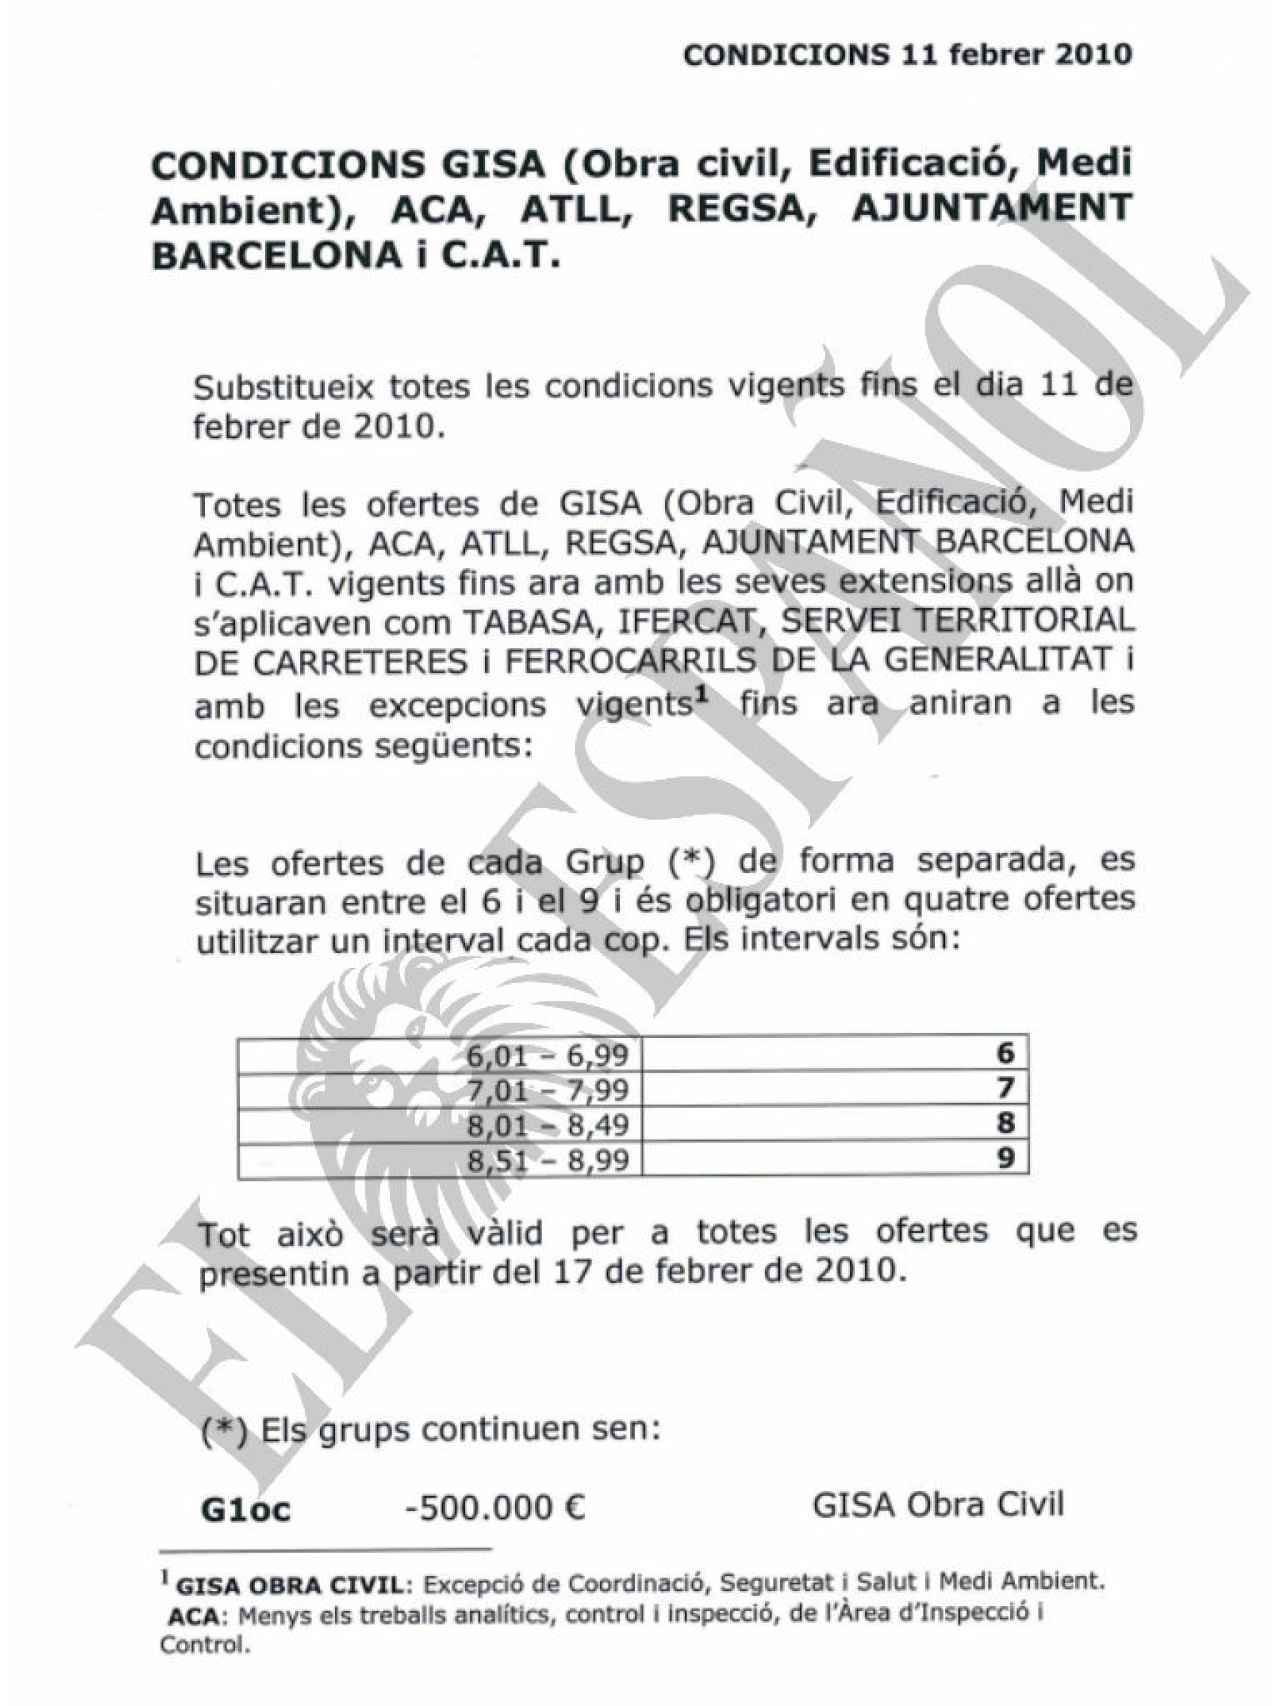 DOCUMENTO Nº 30. Condiciones del pacto de precios de las ingenierías catalanas para el año 2010.